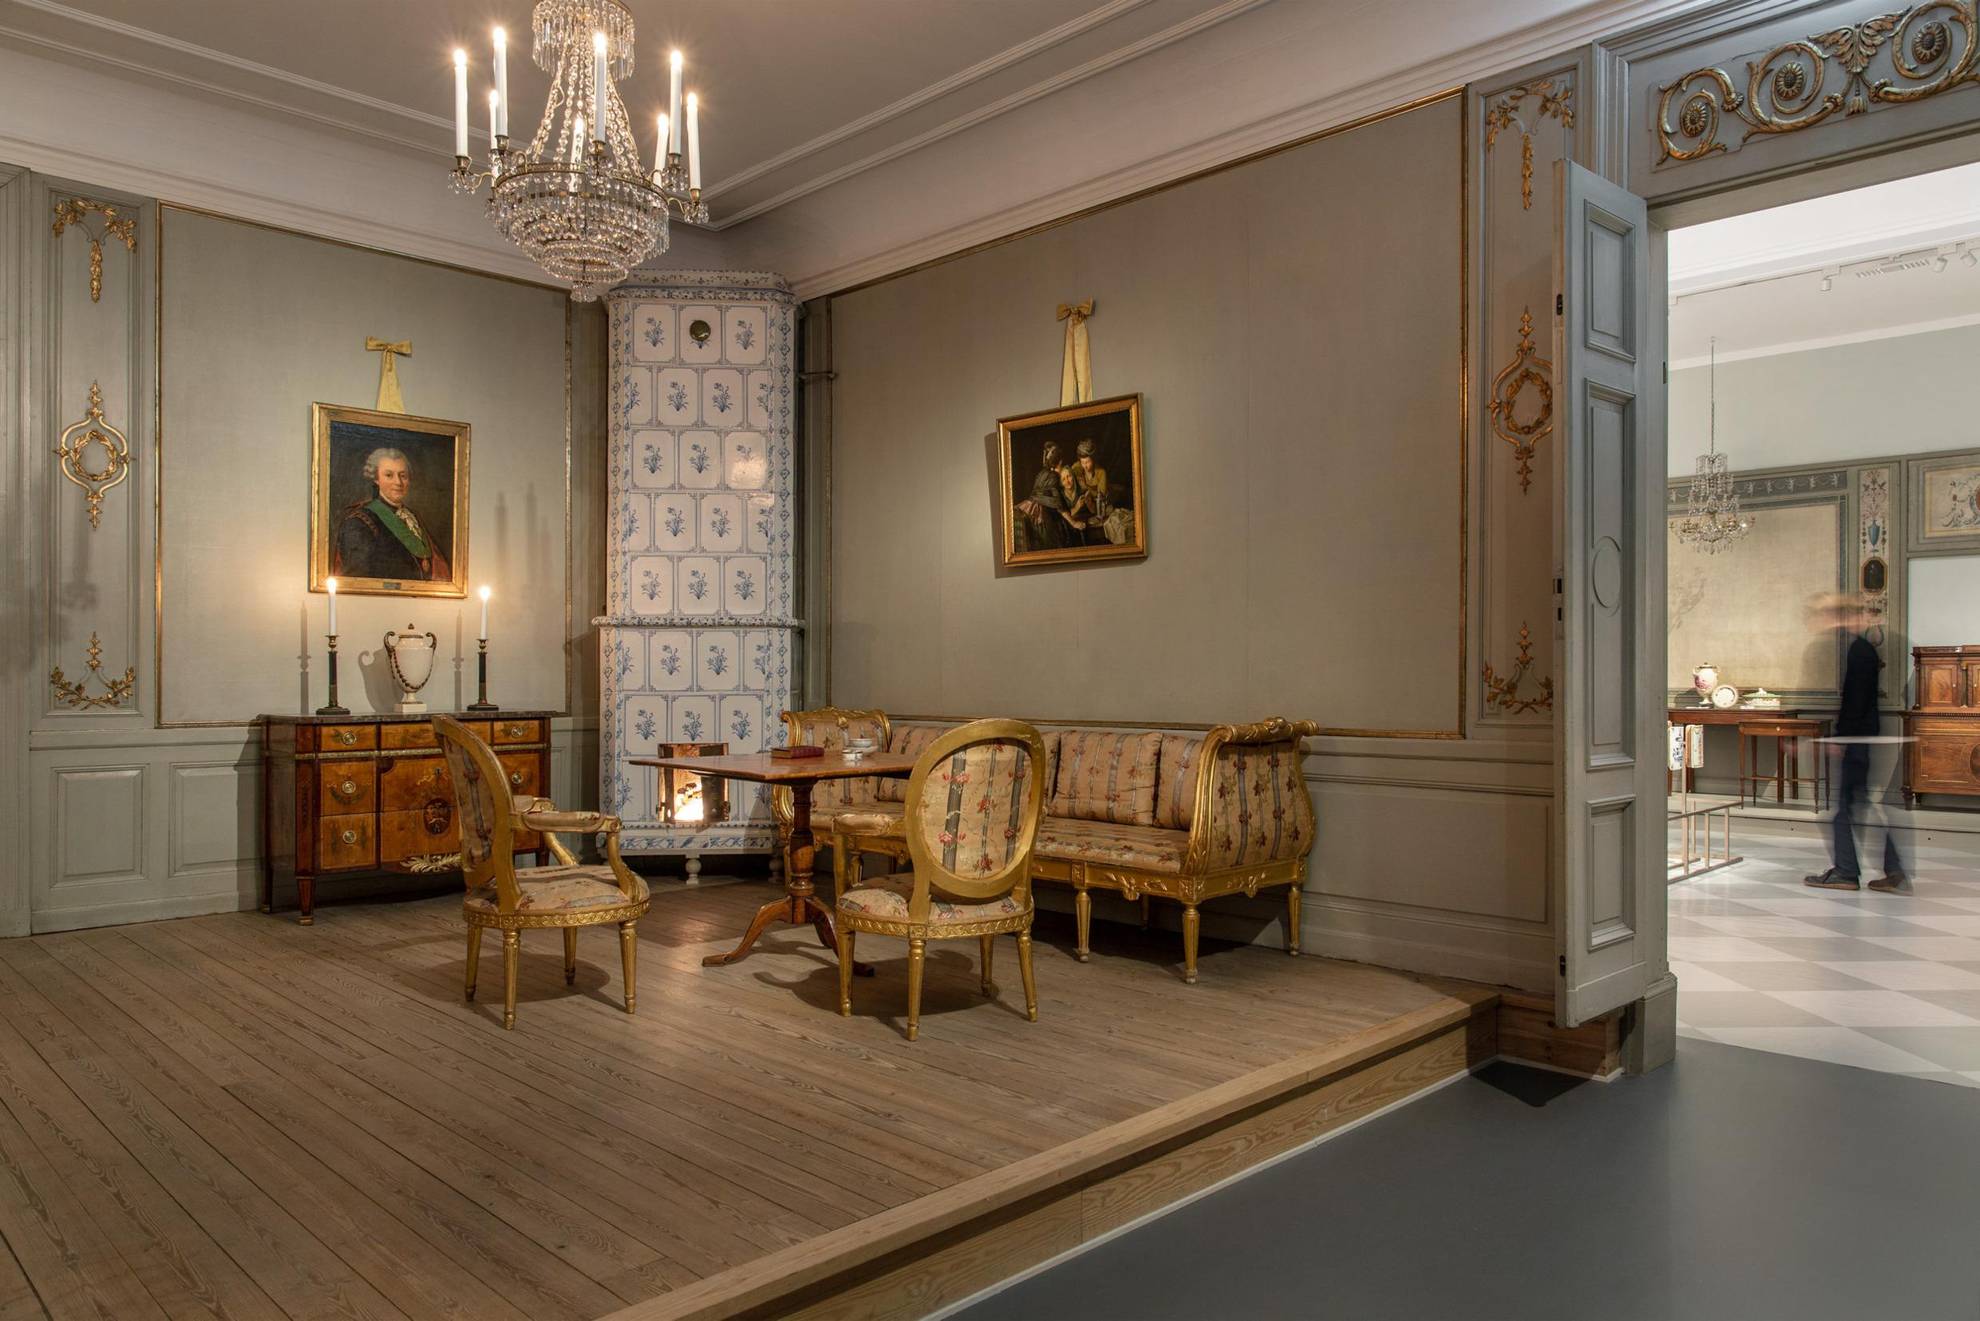 Möbel aus dem 18. Jahrhundert in einer Ausstellung. Ein Kachelofen, ein Sofa und zwei Stühle, ein Tisch und eine Kommode, ein Kristallkronleuchter, der von der Decke hängt, und zwei Gemälde an der Wand.